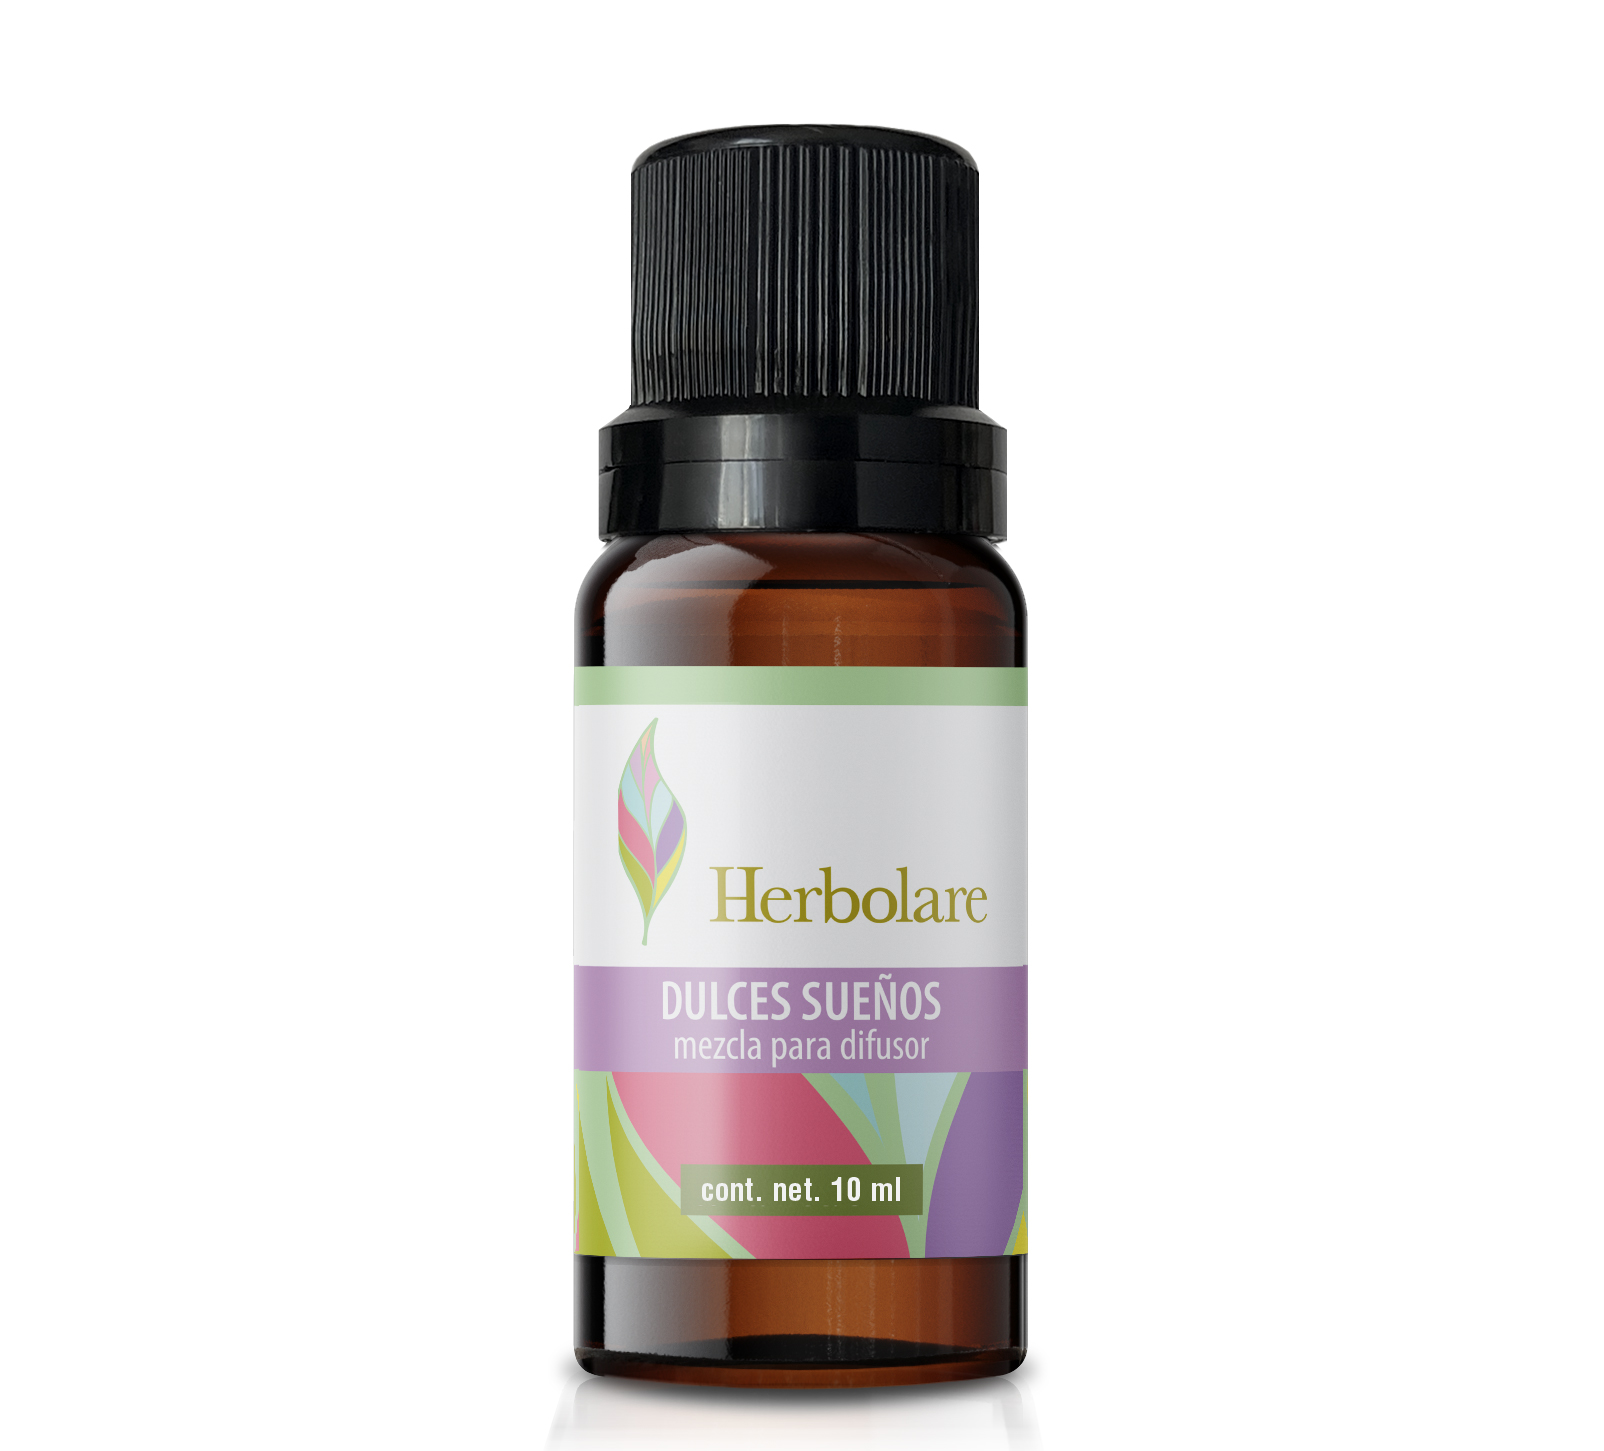 Aceite esencial Herbolare Dulces Sueños 10 ml para difusor. Contiene aceites esenciales 100% puros que calman y tranquilizan.